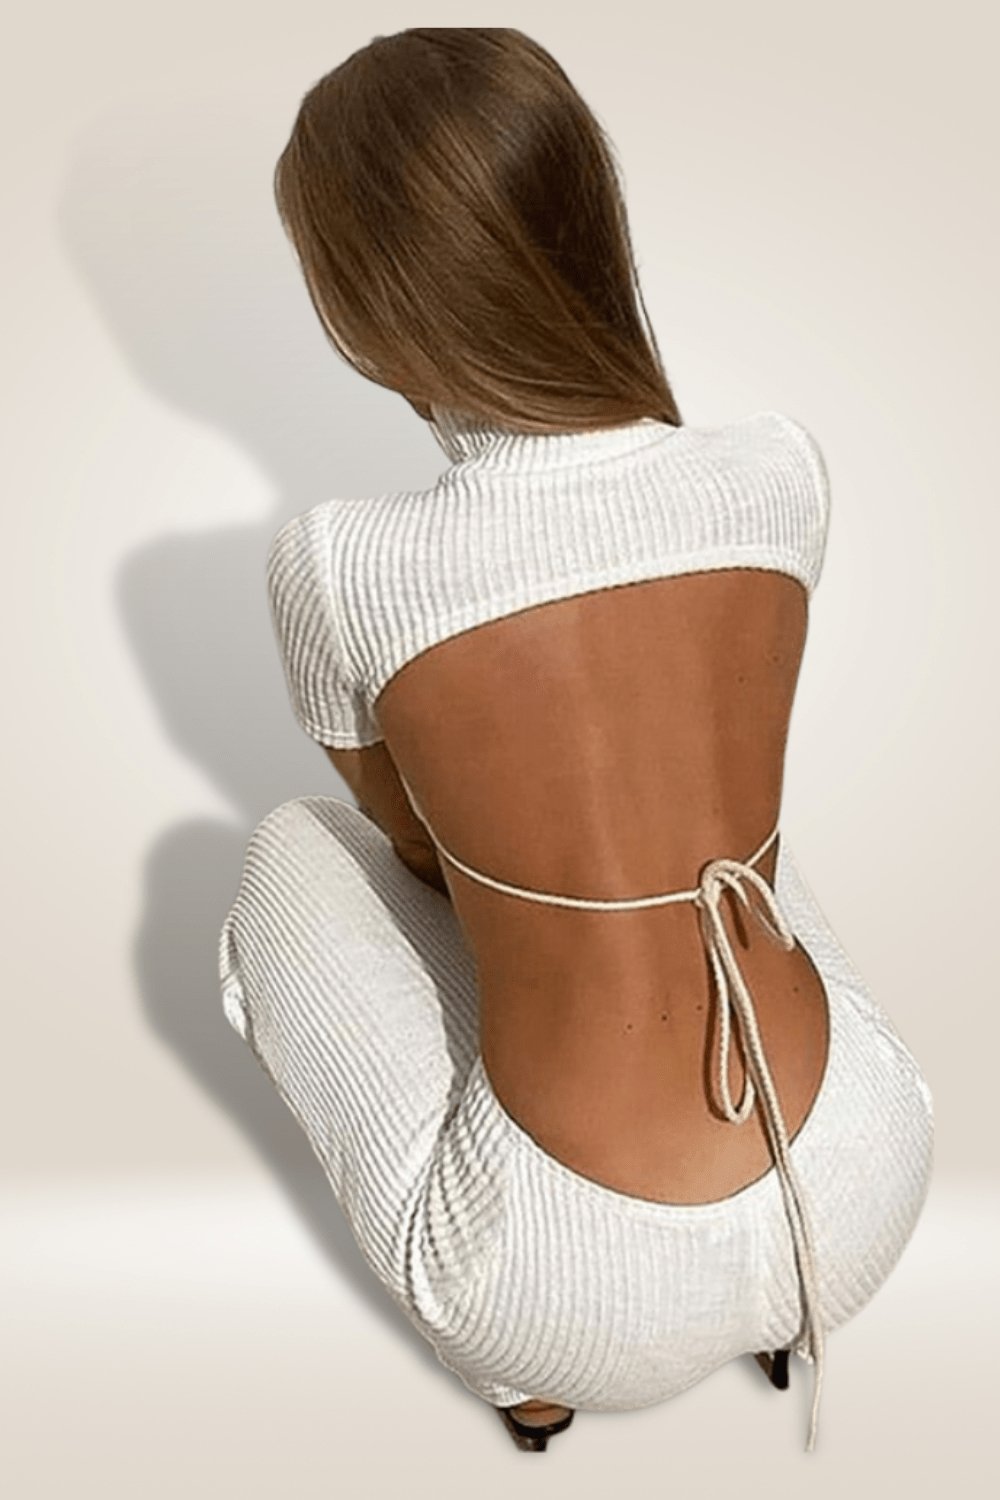 Backless Cut Out White Jumpsuit - TGC Boutique - White Jumpsuits